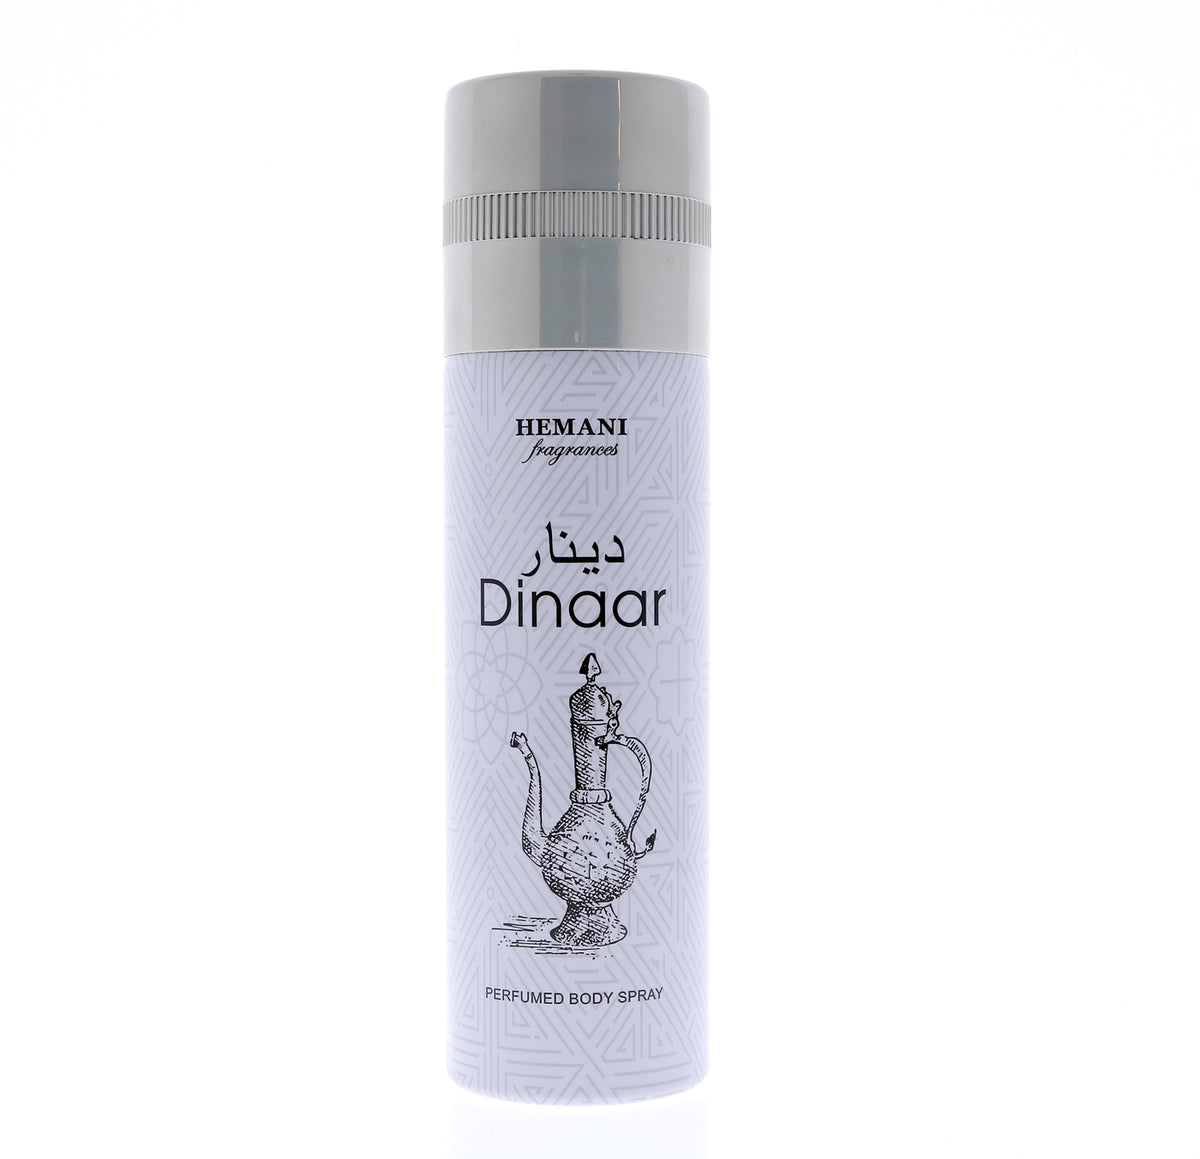 hemani-dinaar-deodorant-spray-200ml-7-oz-unisex-1